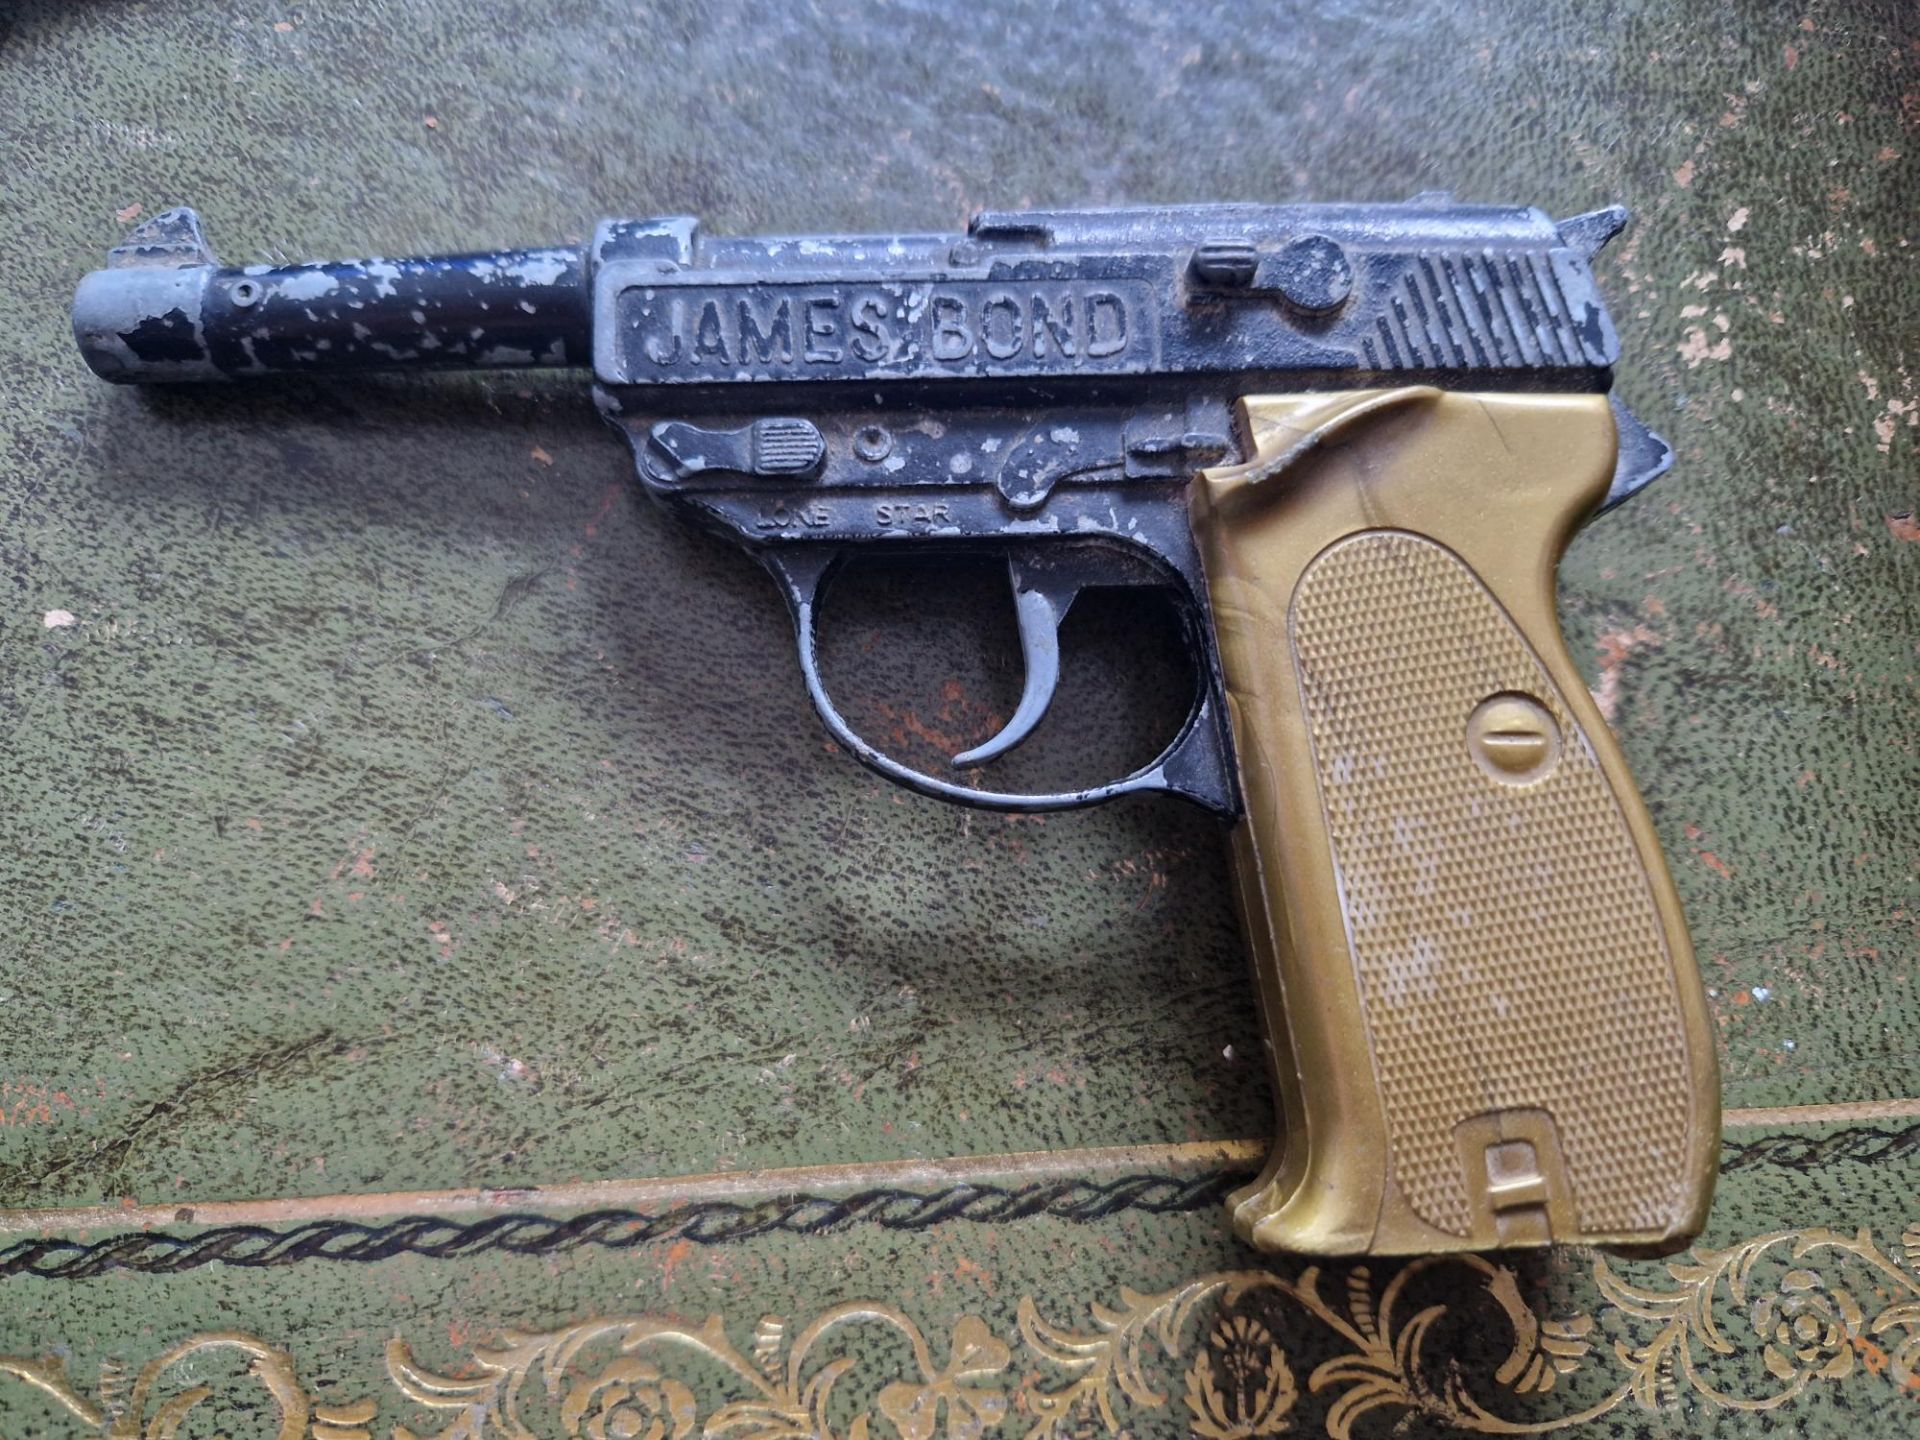 James bond 007 Collectible gun model